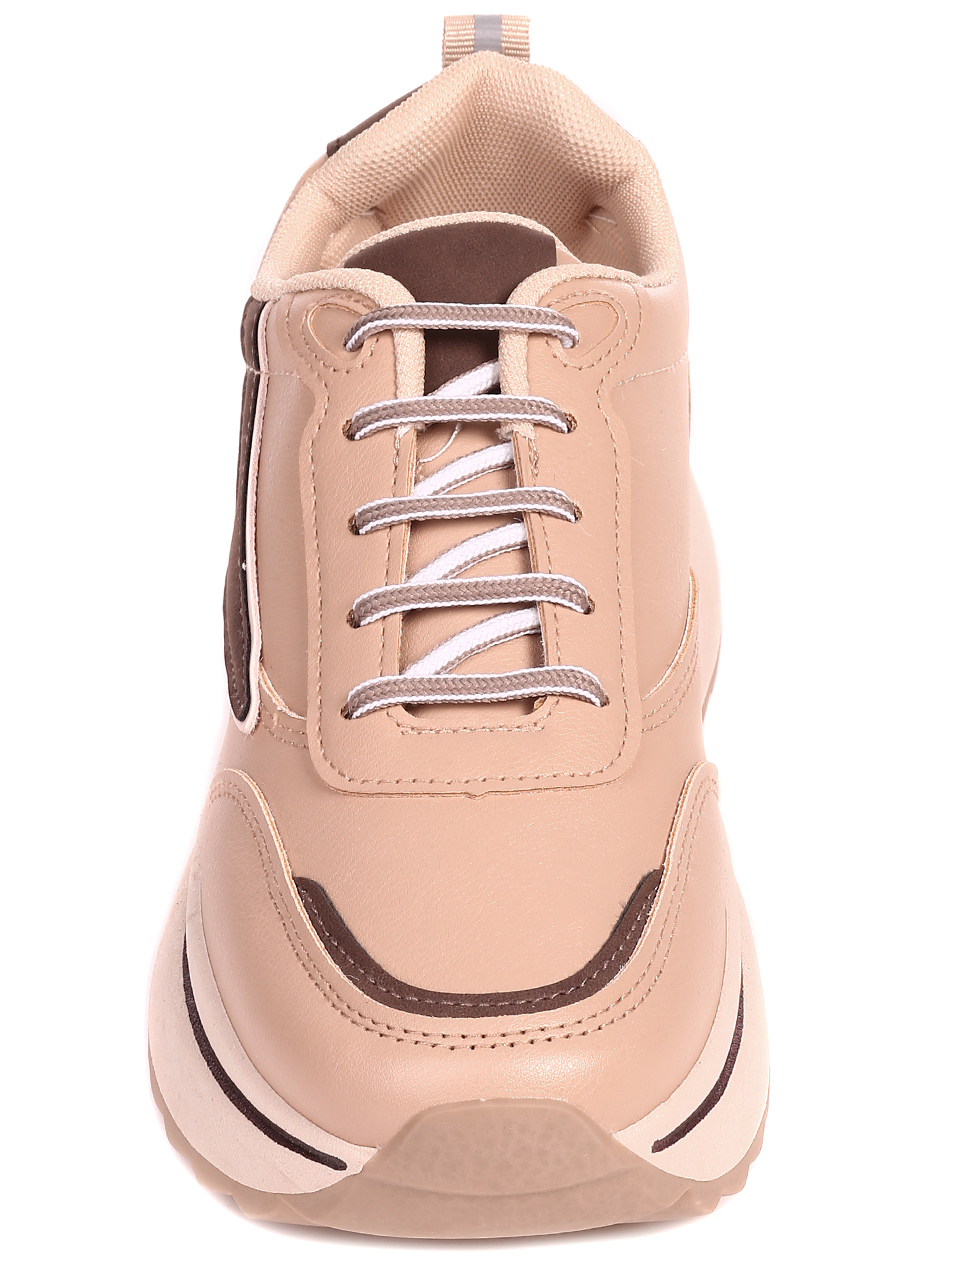 Ежедневни дамски комфортни обувки на платформа 3U-22536 beige/brown